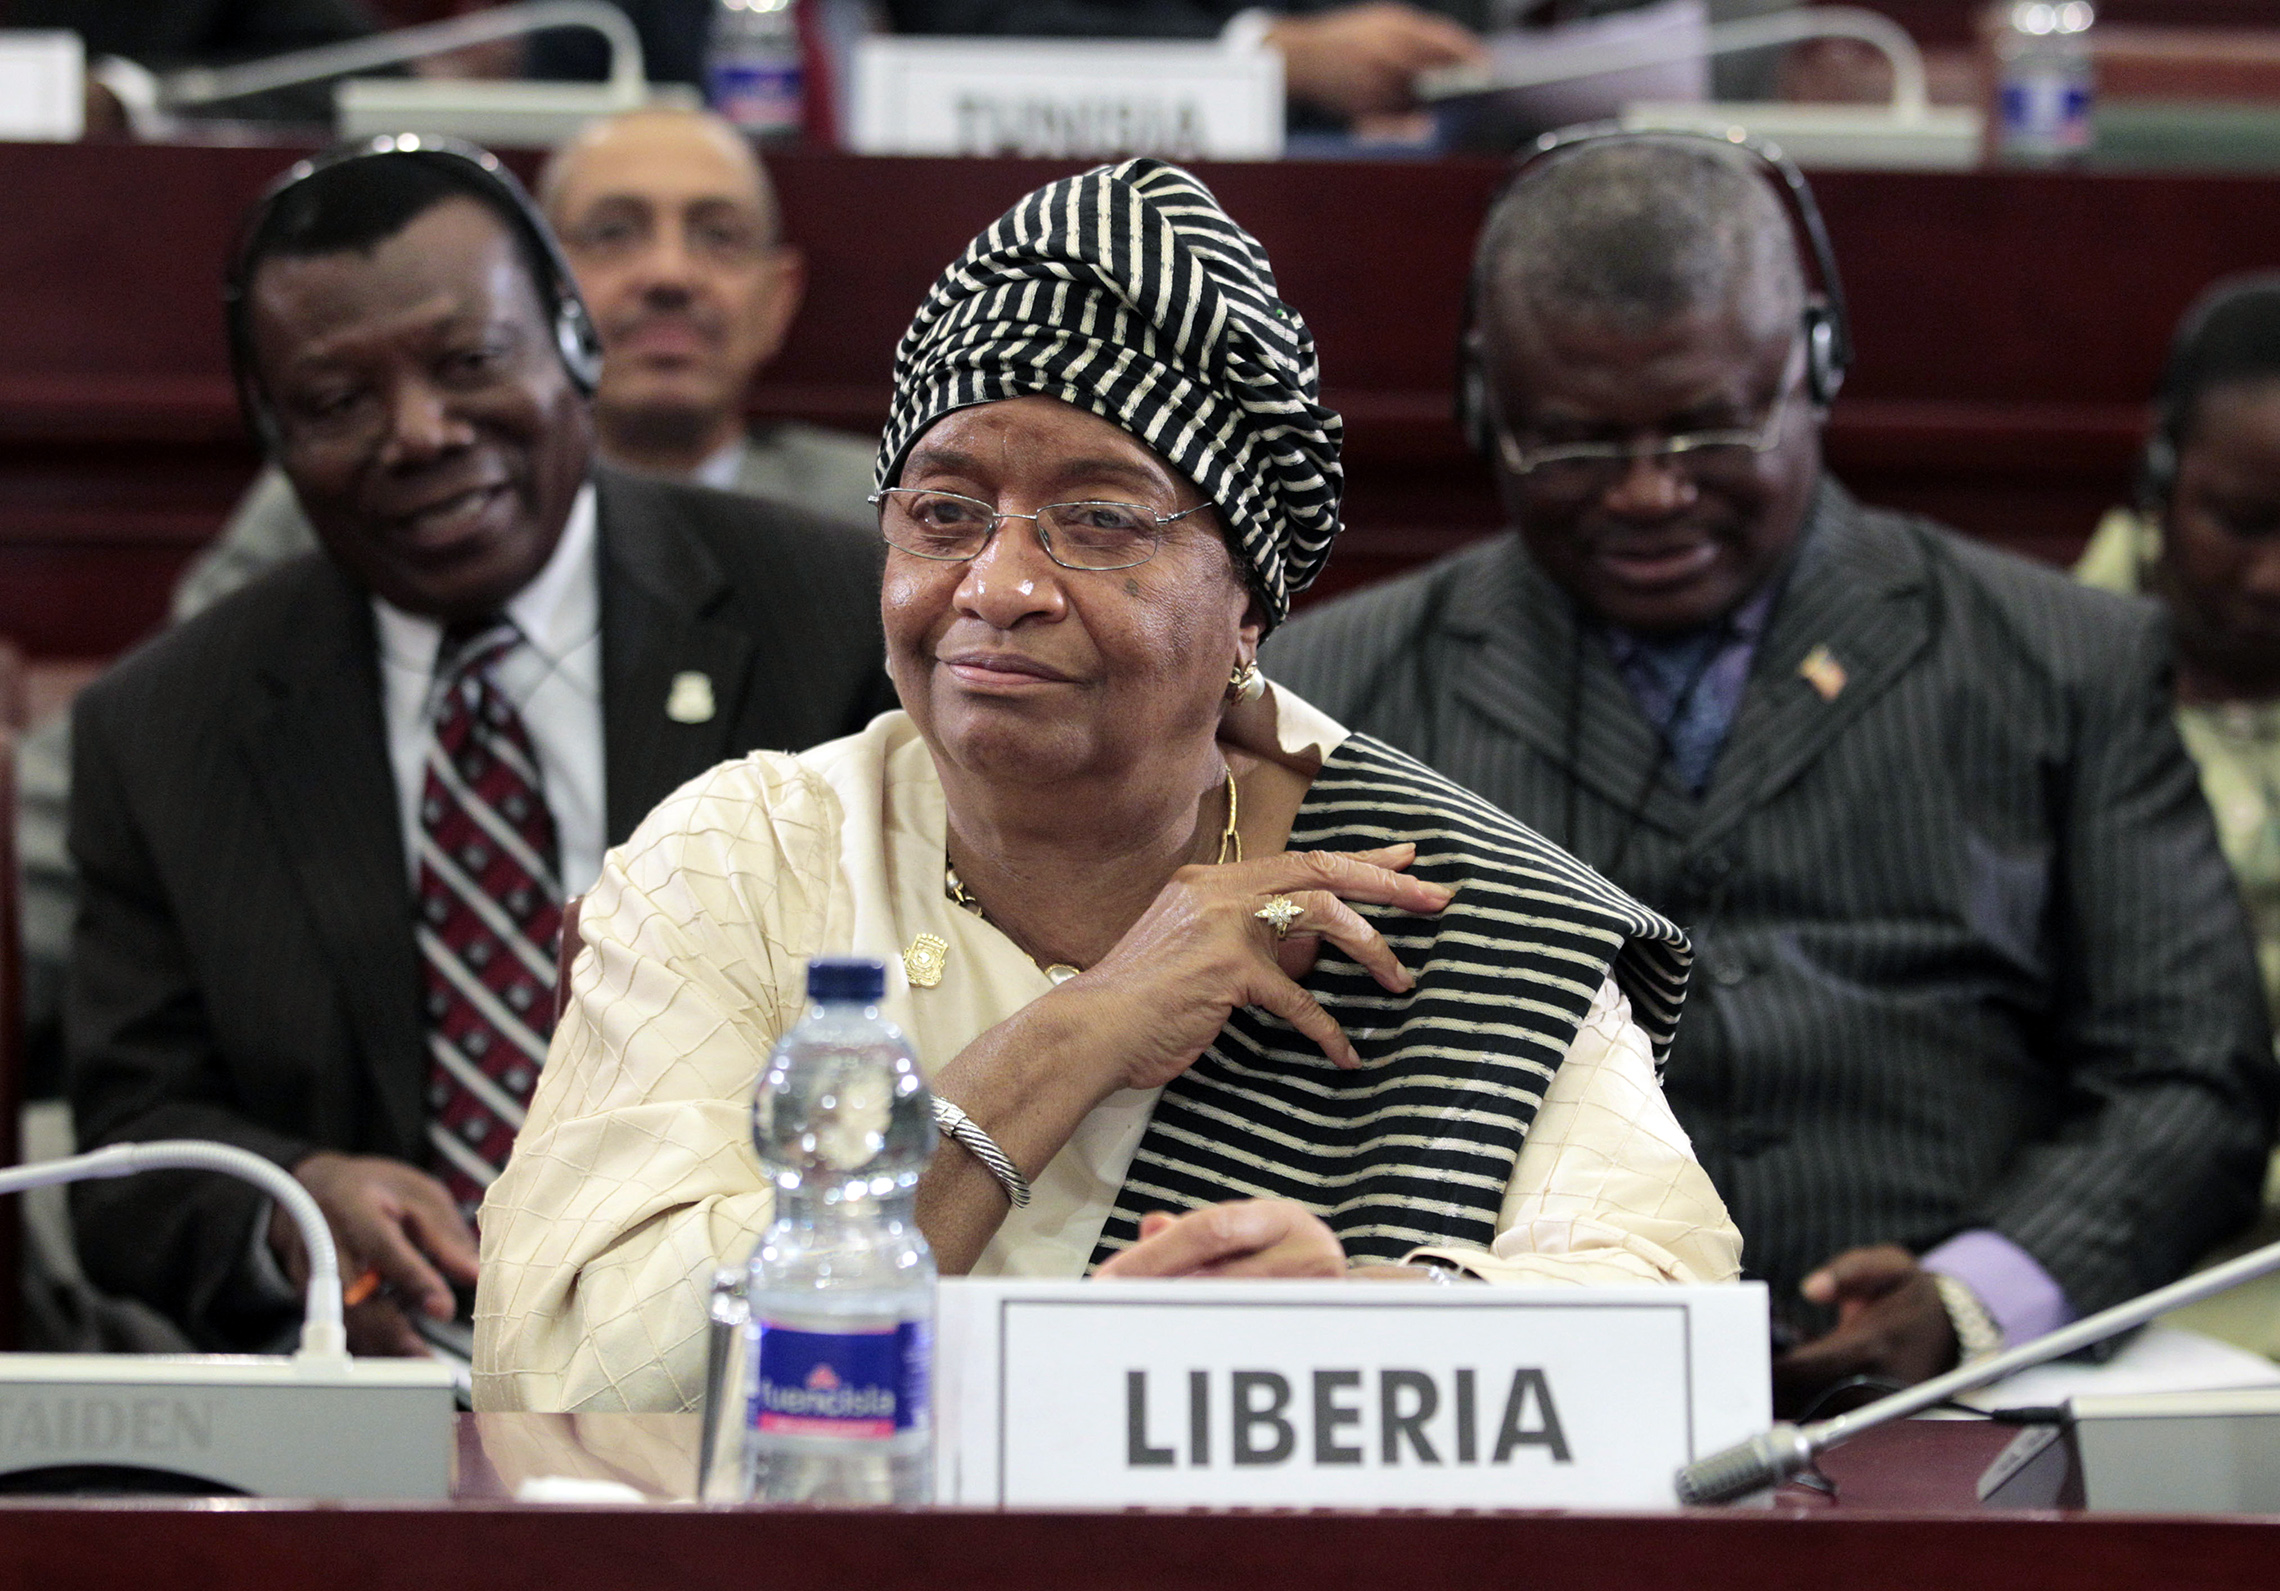 președintele liberian Ellen Johnson Sirleaf, văzut în timpul sesiunii de închidere a celui de-al 17-lea Summit al Uniunii Africane din Malabo, Guineea Ecuatorială, 2011. Sesiunea zilei a fost dominată de dezbaterea asupra turbulențelor din Libia, unde Moammar Gaddafi s-a agățat precar de putere în fața unei revolte populare împotriva guvernării sale de 42 de ani. (AP Images/Rebecca Blackwell)'s session was dominated by debate over the turmoil in Libya, where Moammar Gadhafi clung precariously to power in the face of a popular uprising against his 42-year rule. (AP Images/Rebecca Blackwell)